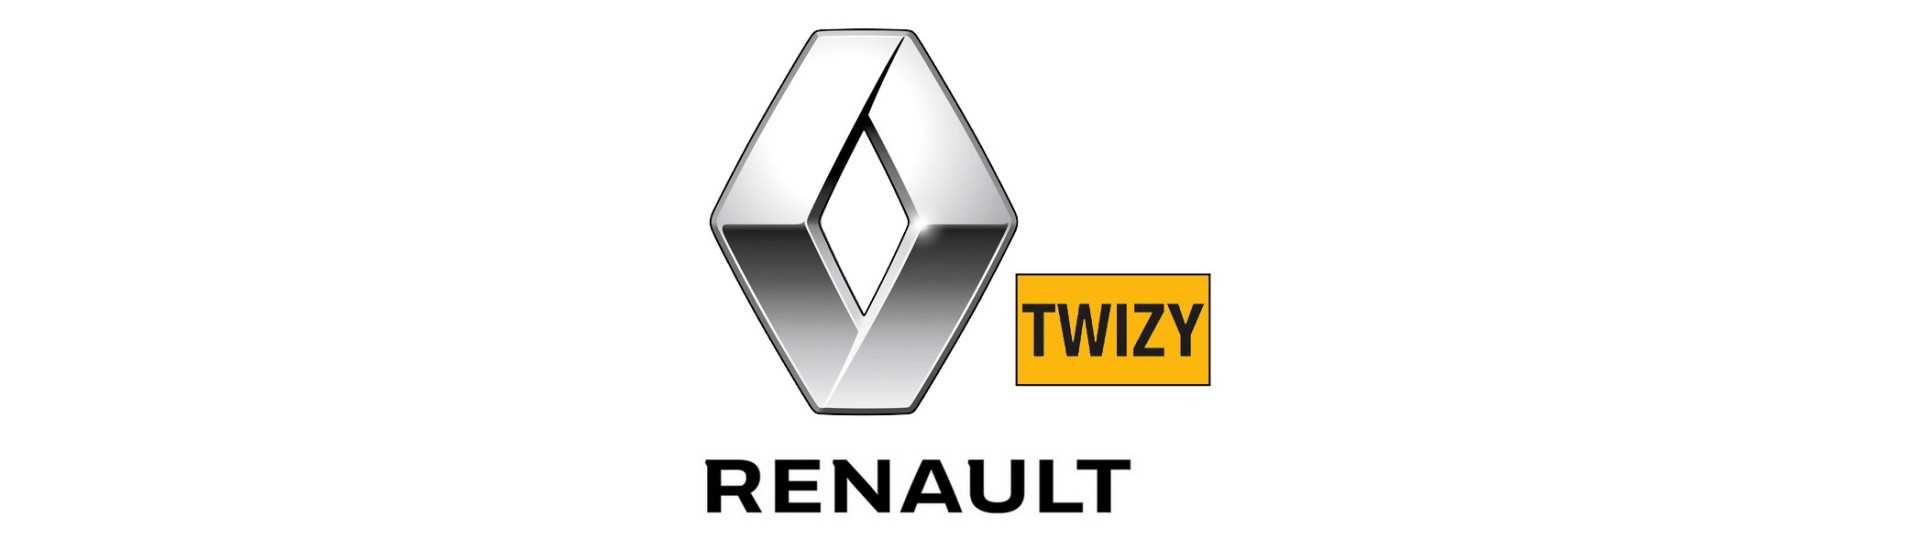 Ice torkar motor bästa prisbil utan licens Renault Twizy